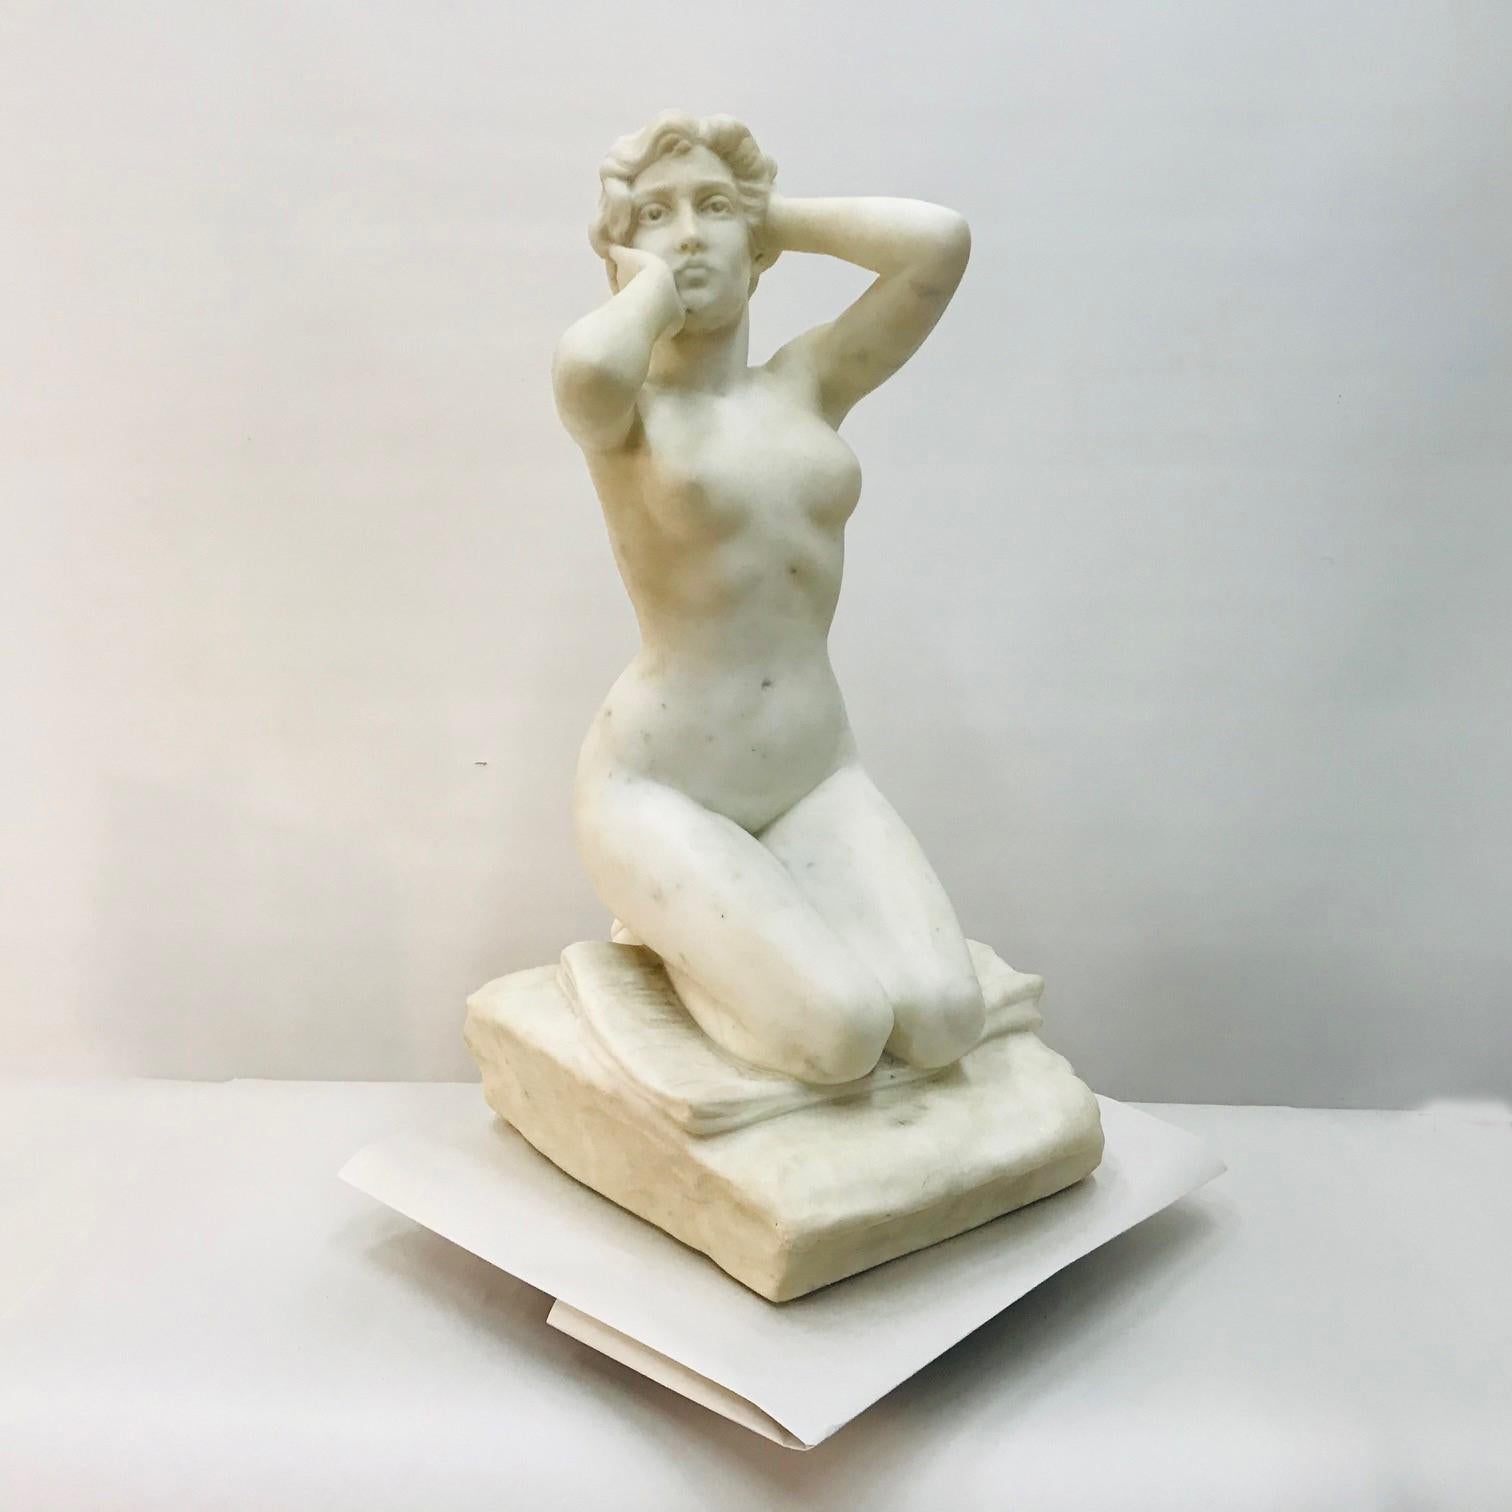  Constantino Barbella (1852-1925)
 La Bagneuse, marbre blanc de Carrera.
 représentant une femme nue agenouillée sur un coussin et arrangeant langoureusement ses cheveux ; 
A.C.C. Barbella
À l'époque, cela aurait été considéré comme une